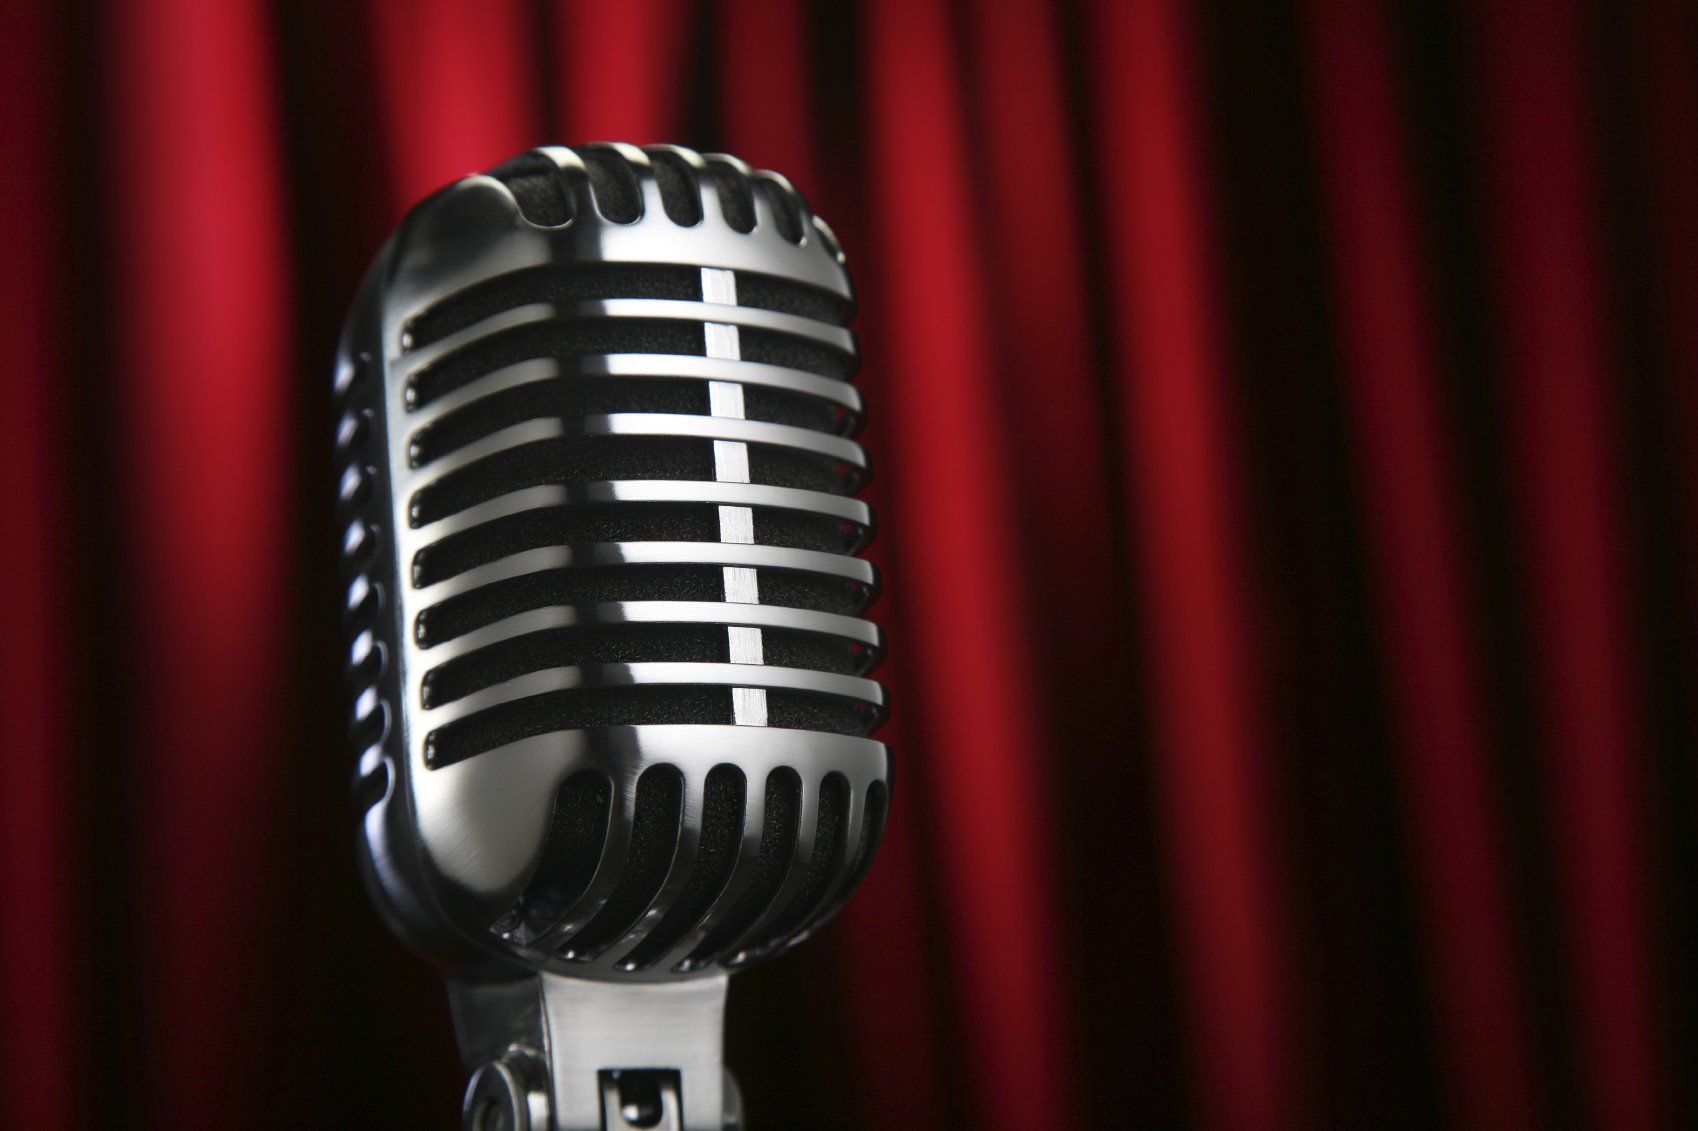 ein Mikrophon als Metapher für die Stimme